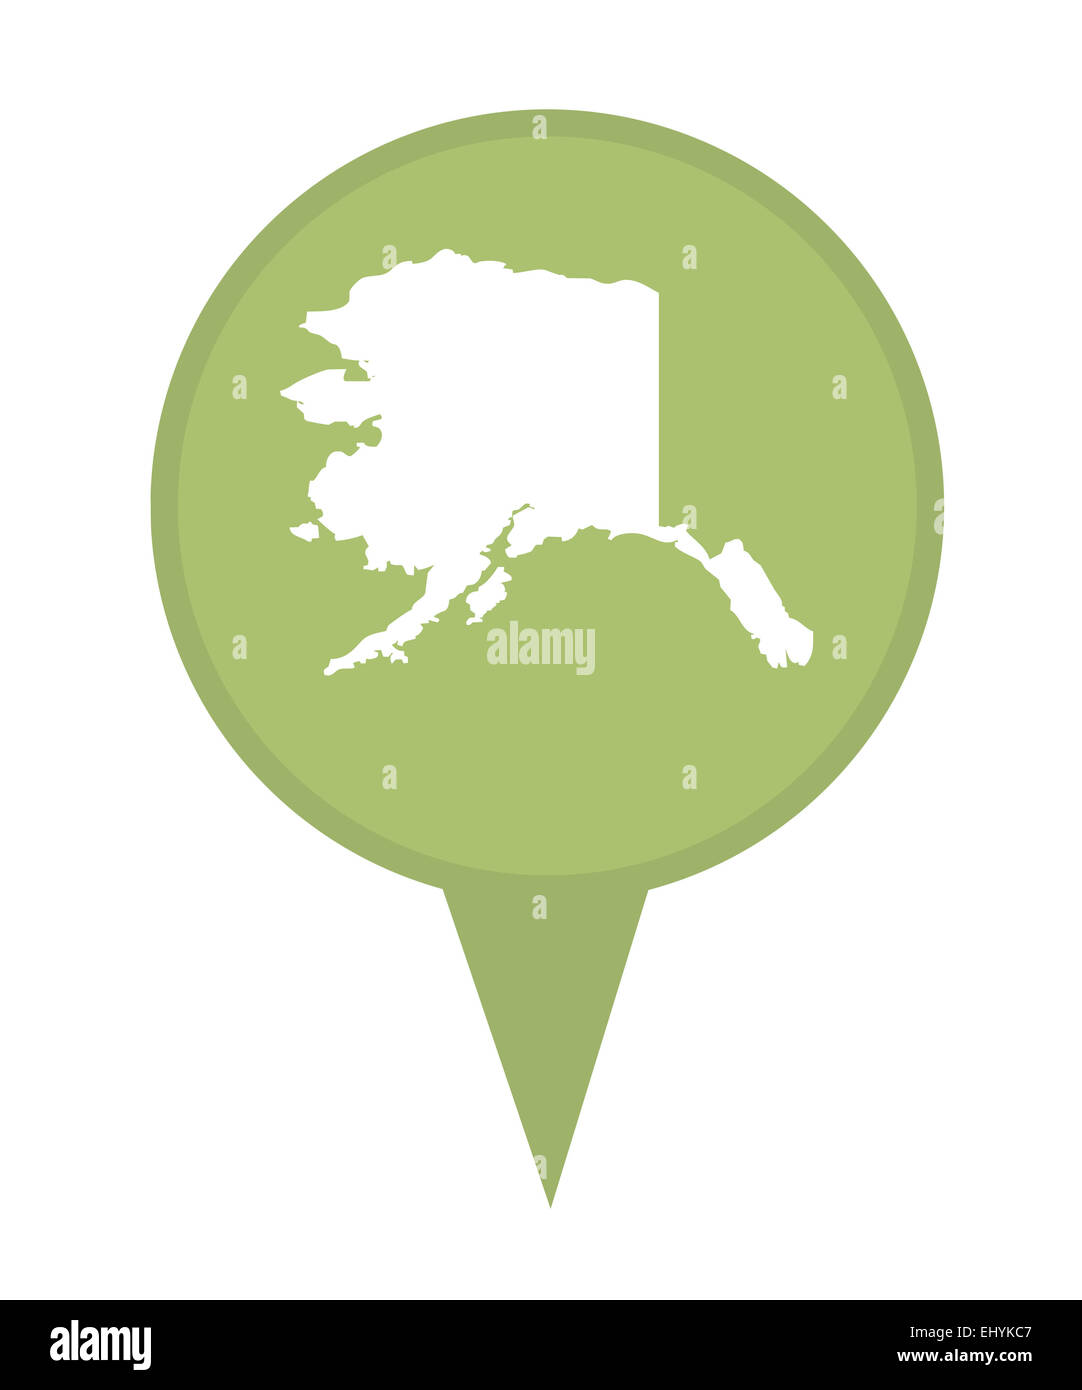 Amerikanischen Bundesstaat Alaska Stecknadel isoliert auf einem weißen Hintergrund. Stockfoto